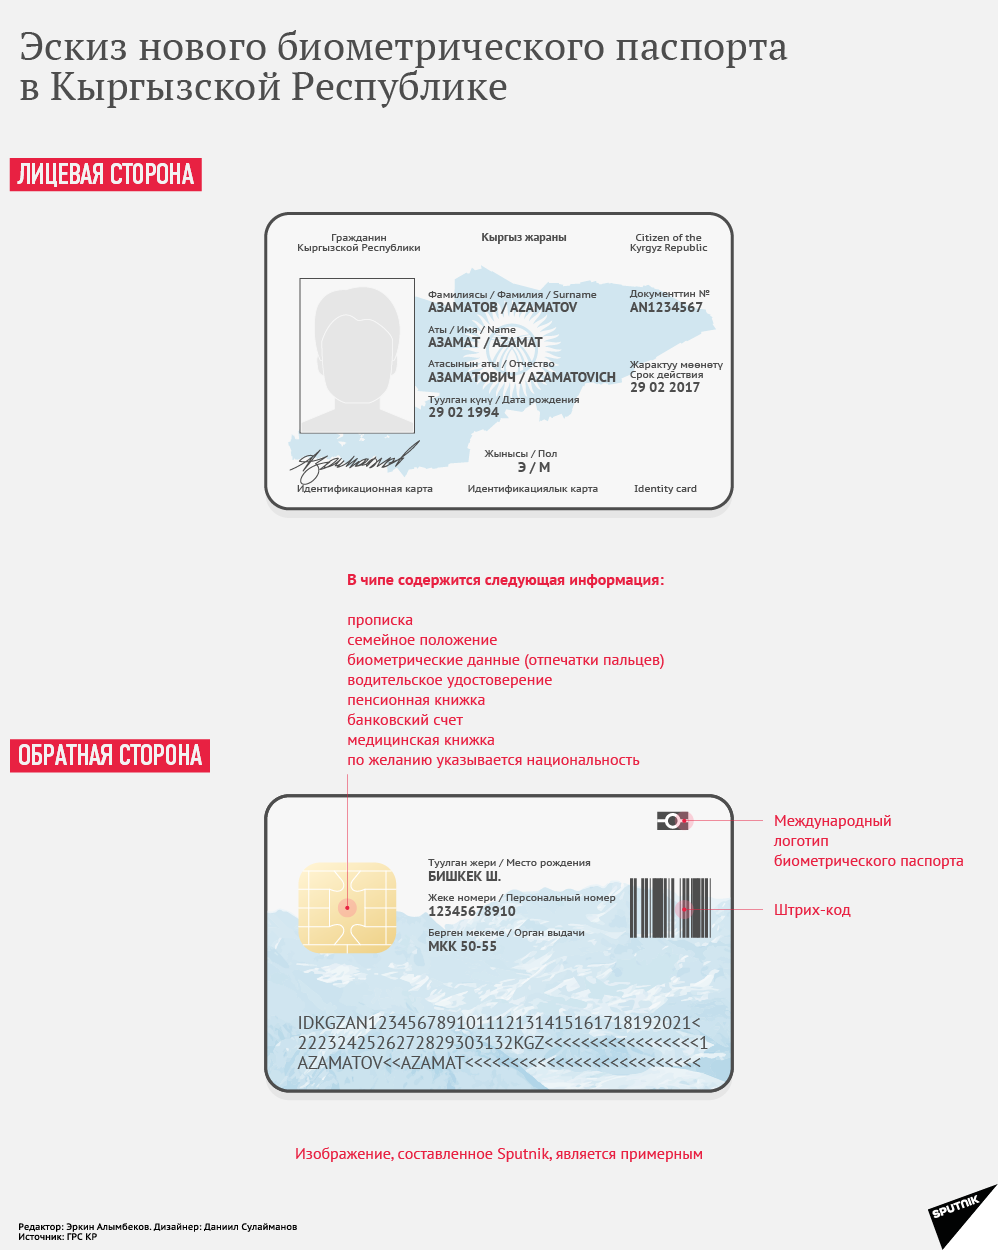 Эскиз нового биометрического паспорта в Кыргызской Республике